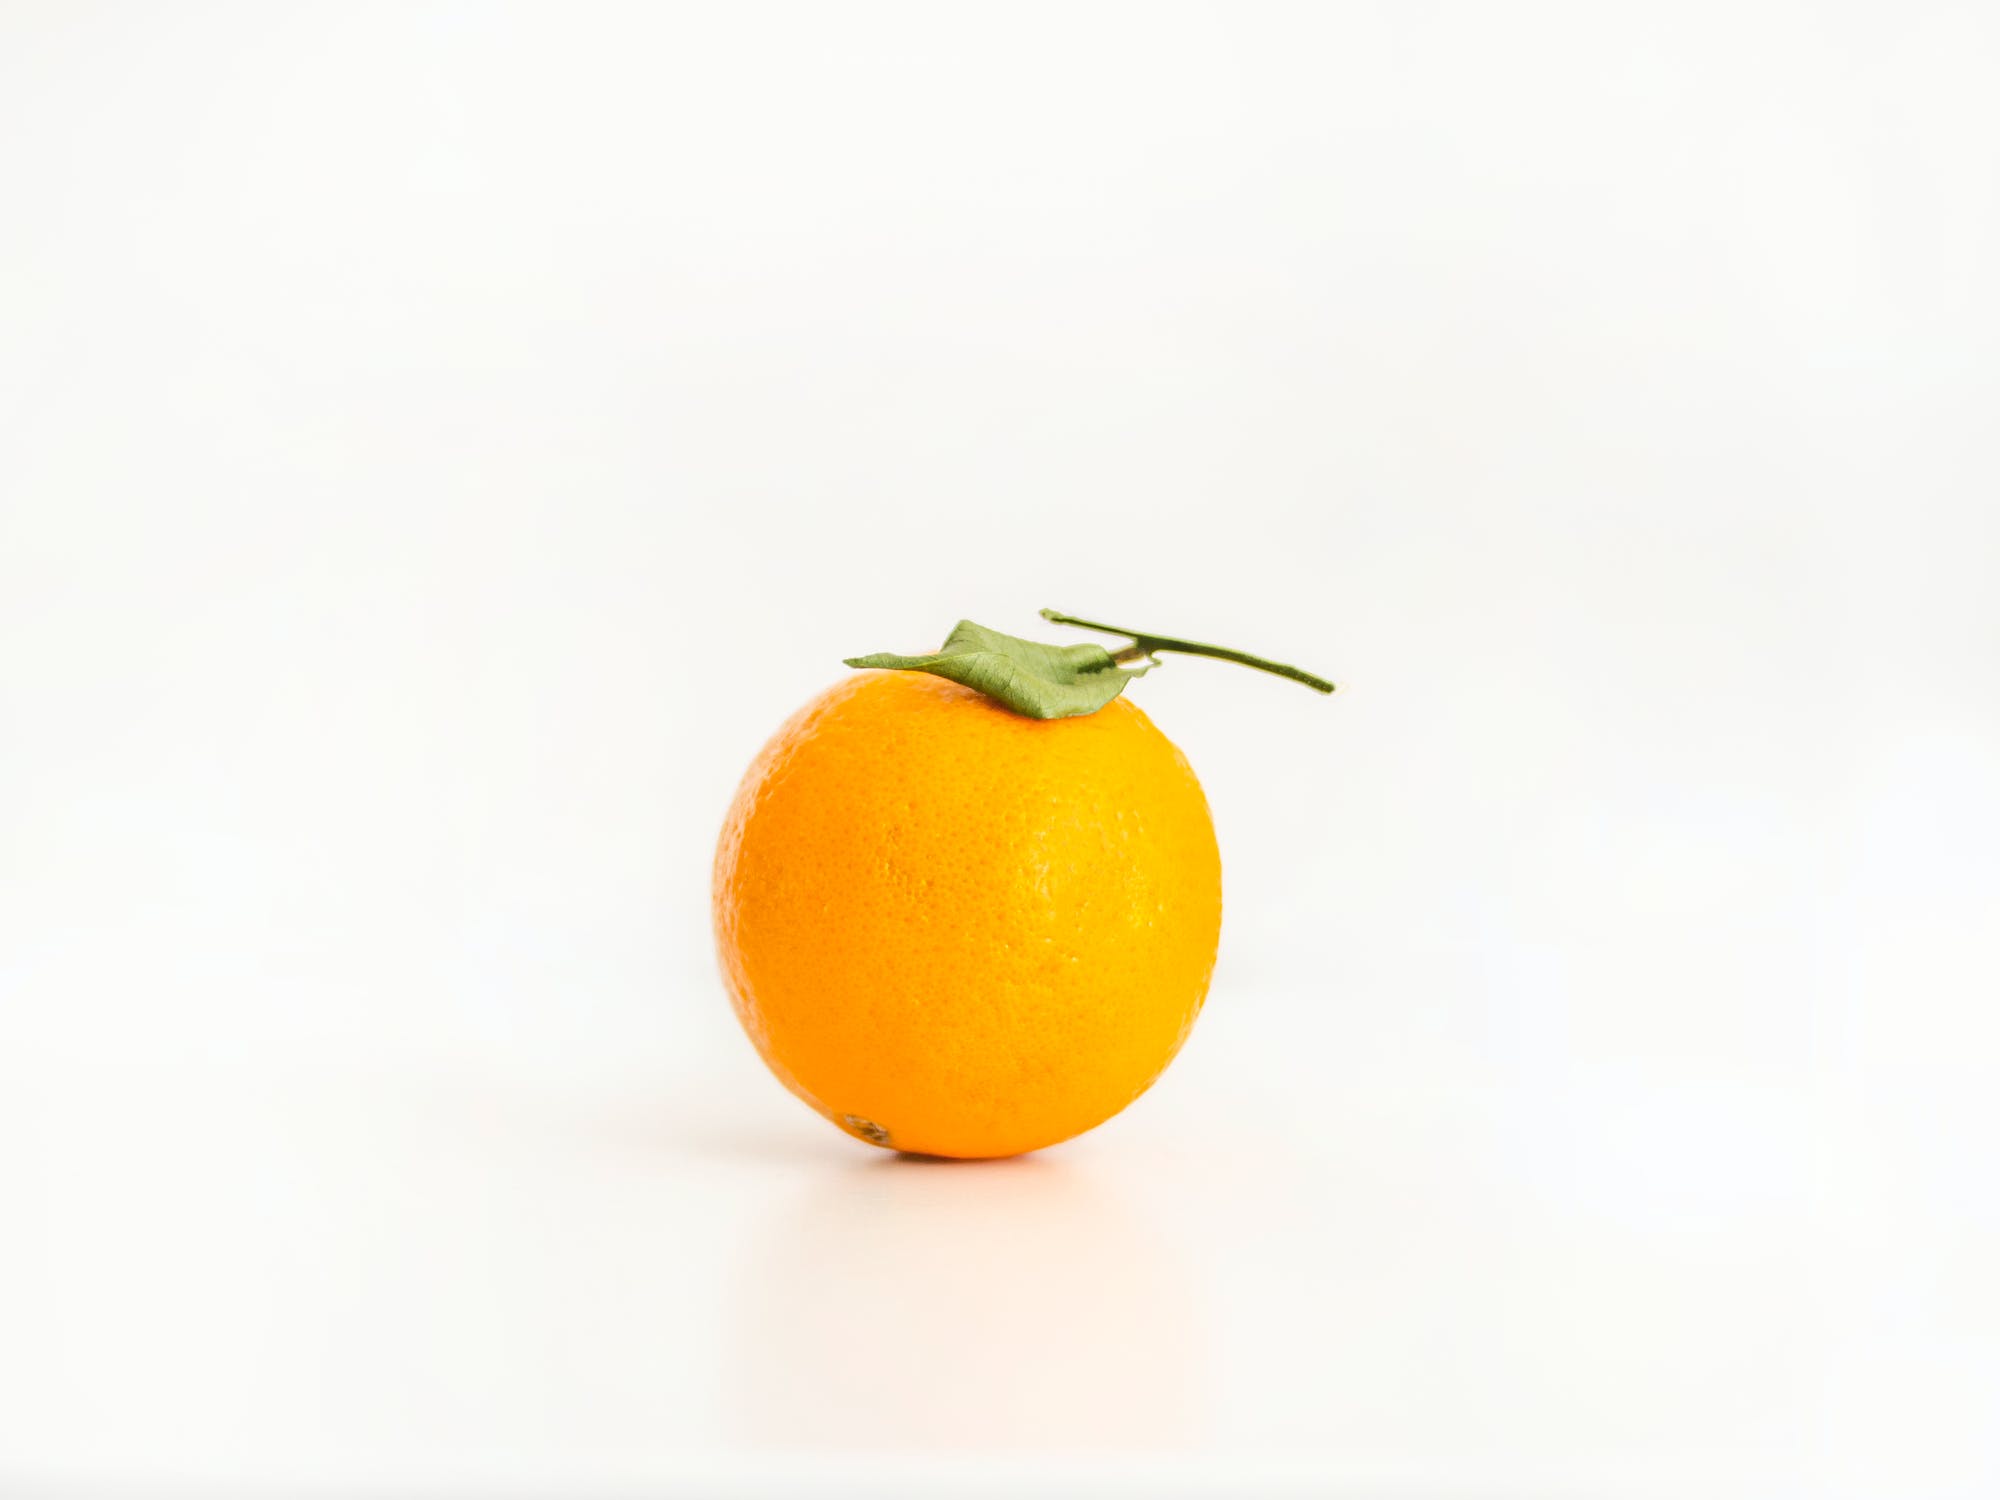 Cómo comprar y elegir buenas naranjas, según la OCU